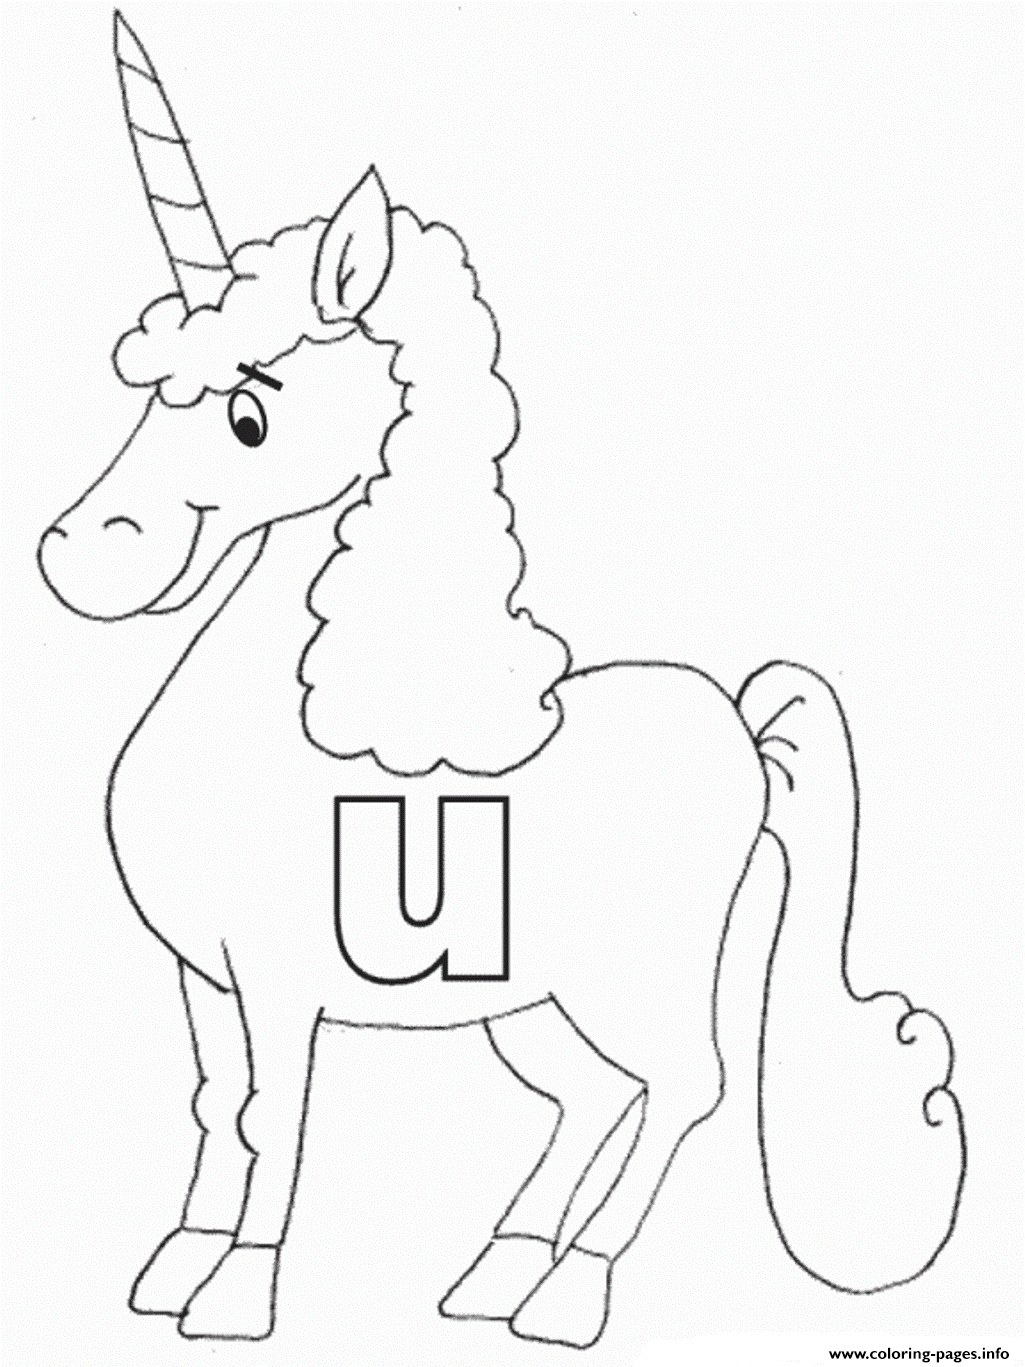 Lowercase U In Unicorn Alphabet S Freebb4e coloring